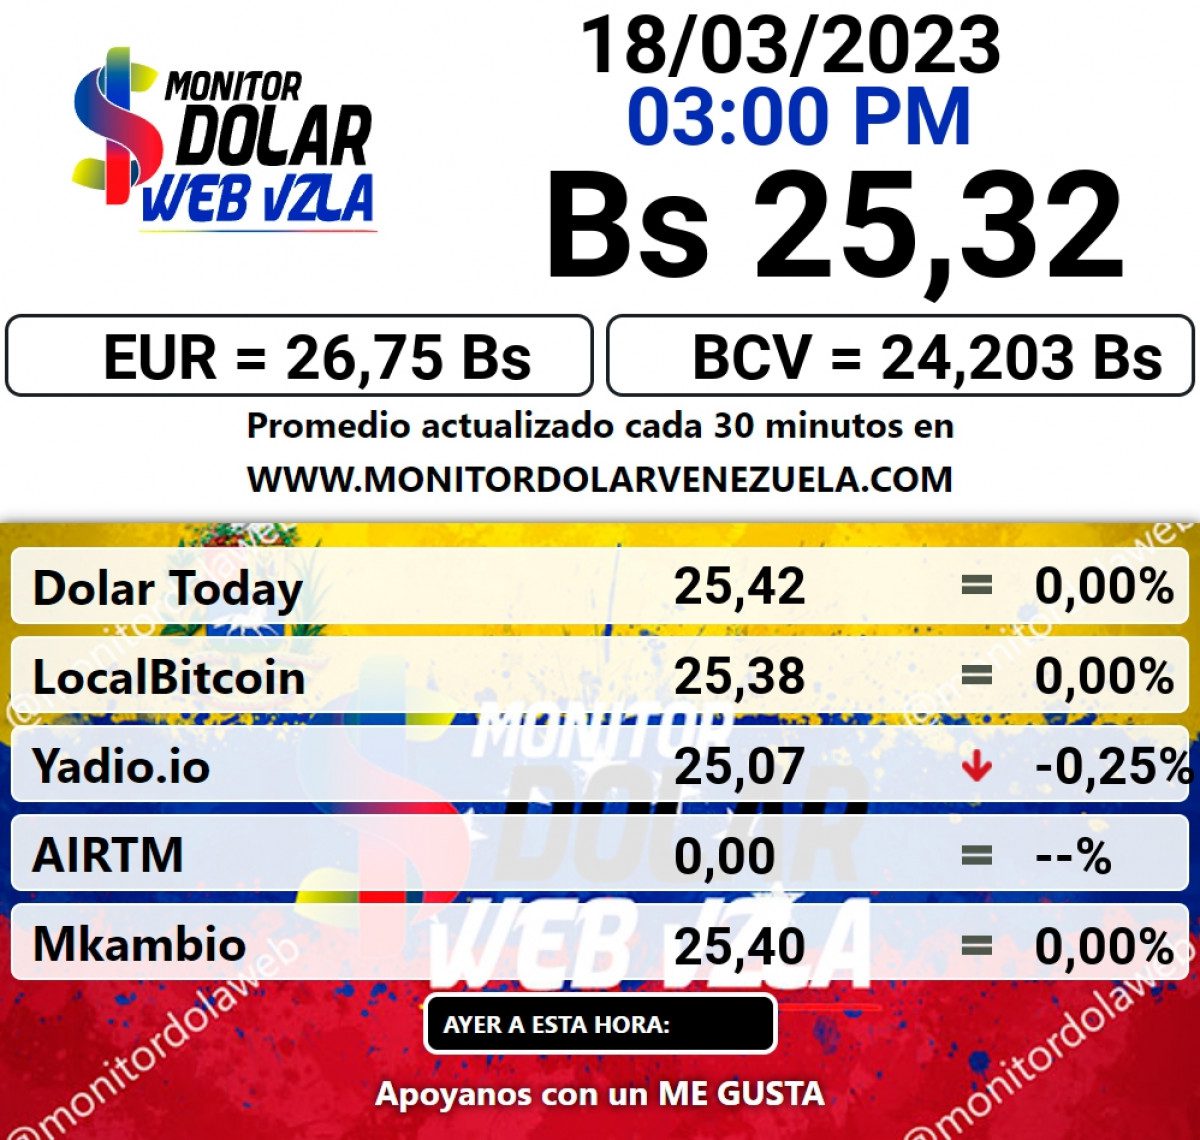 dolartoday en venezuela precio del dolar este sabado 18 de marzo de 2023 laverdaddemonagas.com monitor1